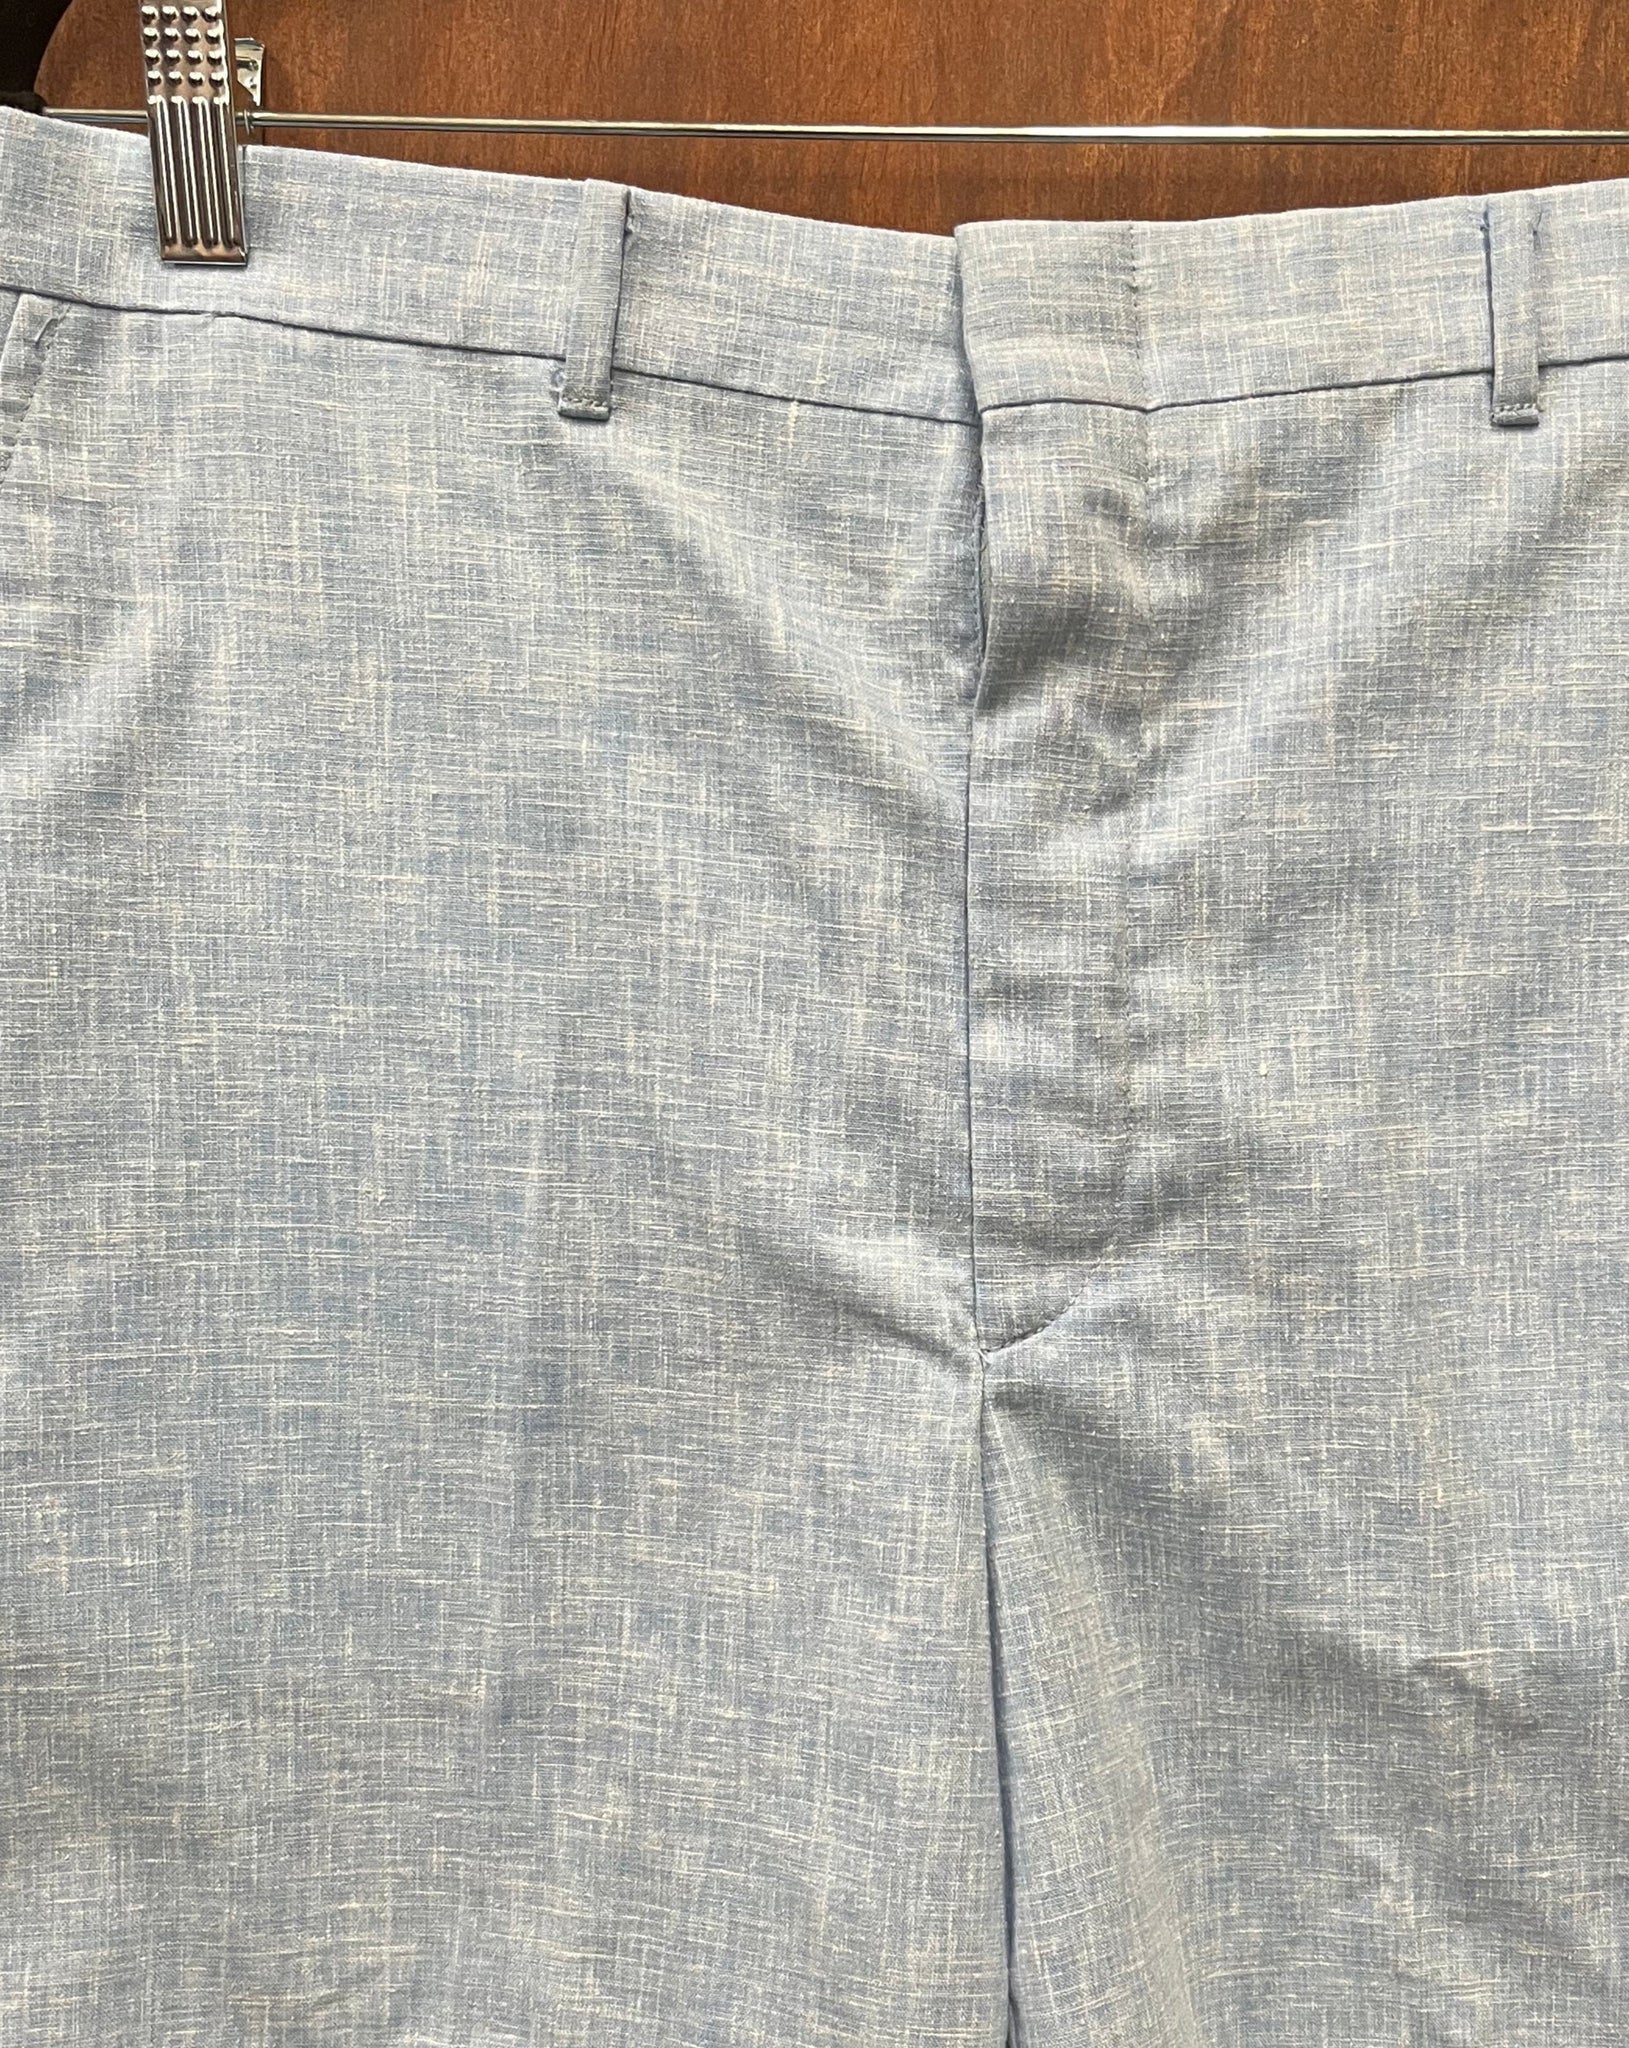 1960s MENS SHORTS- Chambray blue shorts